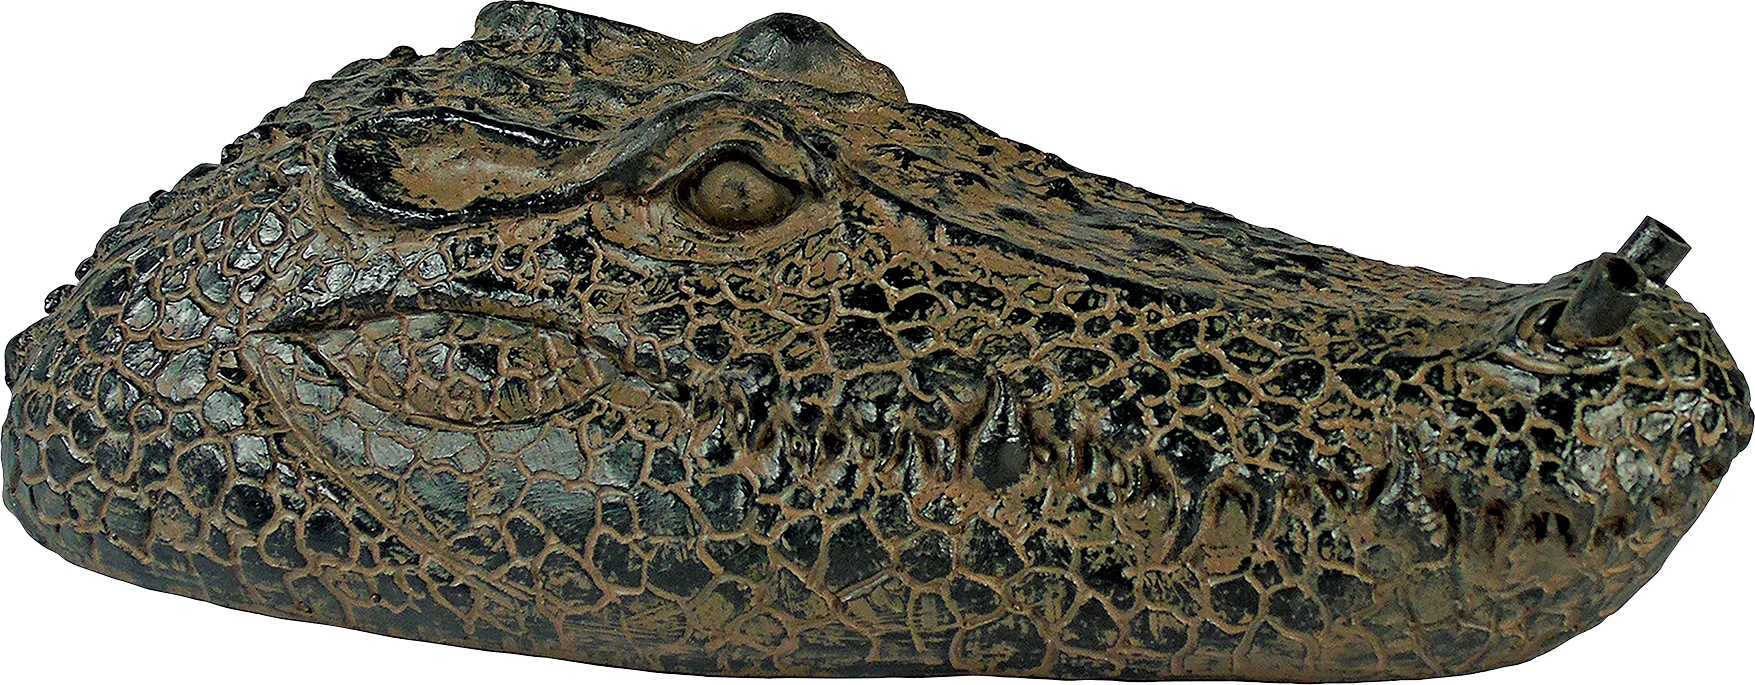 Ubbink Wasserspeier »Krokodil«, Schwimmt auf dem Wasser, BxLxH: 16x34x10 cm